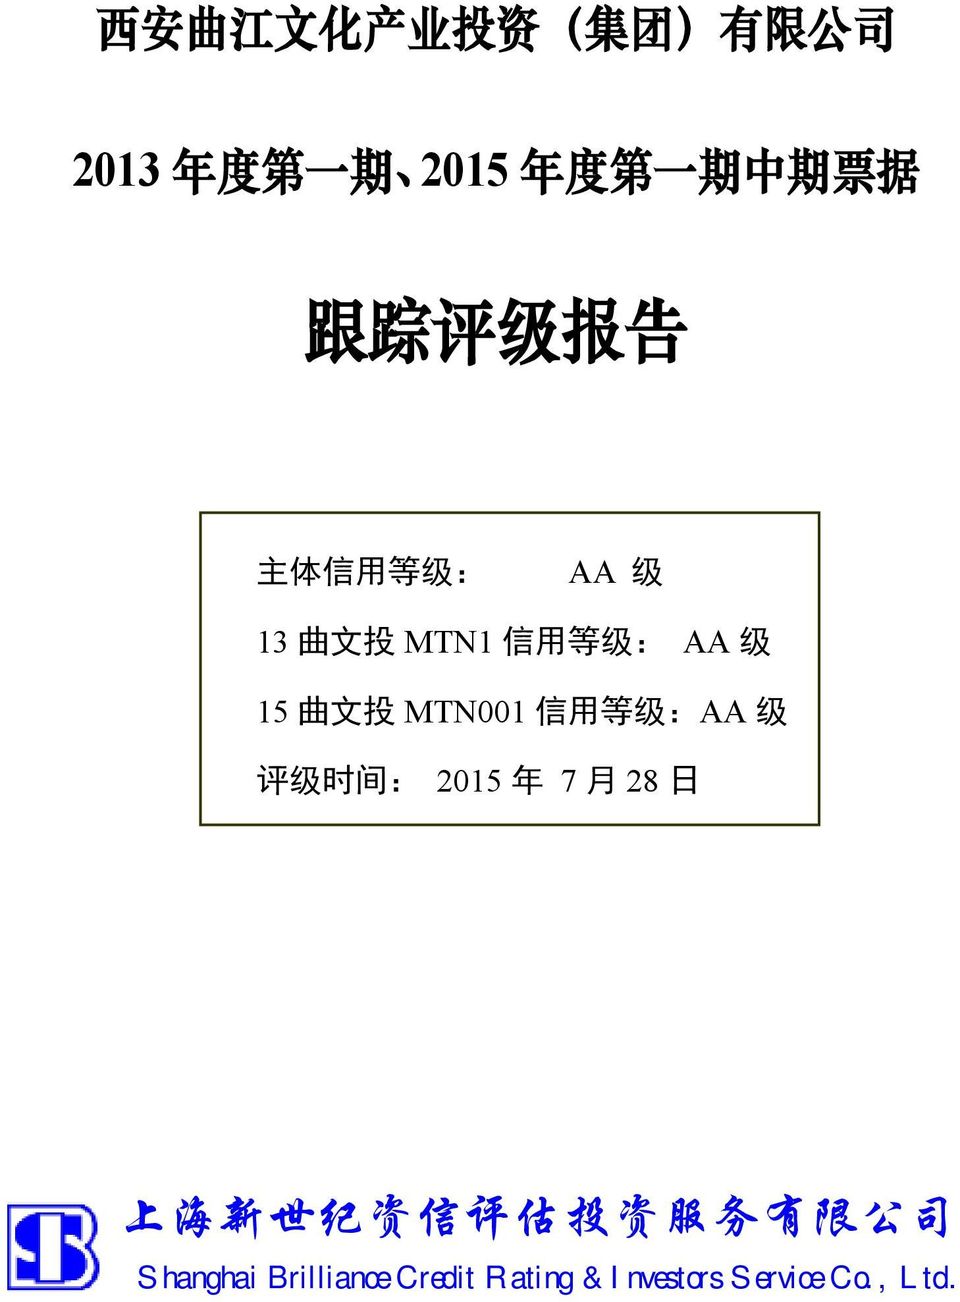 用 等 级 : AA 级 15 曲 文 投 MTN001 信 用 等 级 :AA 级 评 级 时 间 : 2015 年 7 月 28 日 上 海 新 世 纪 资